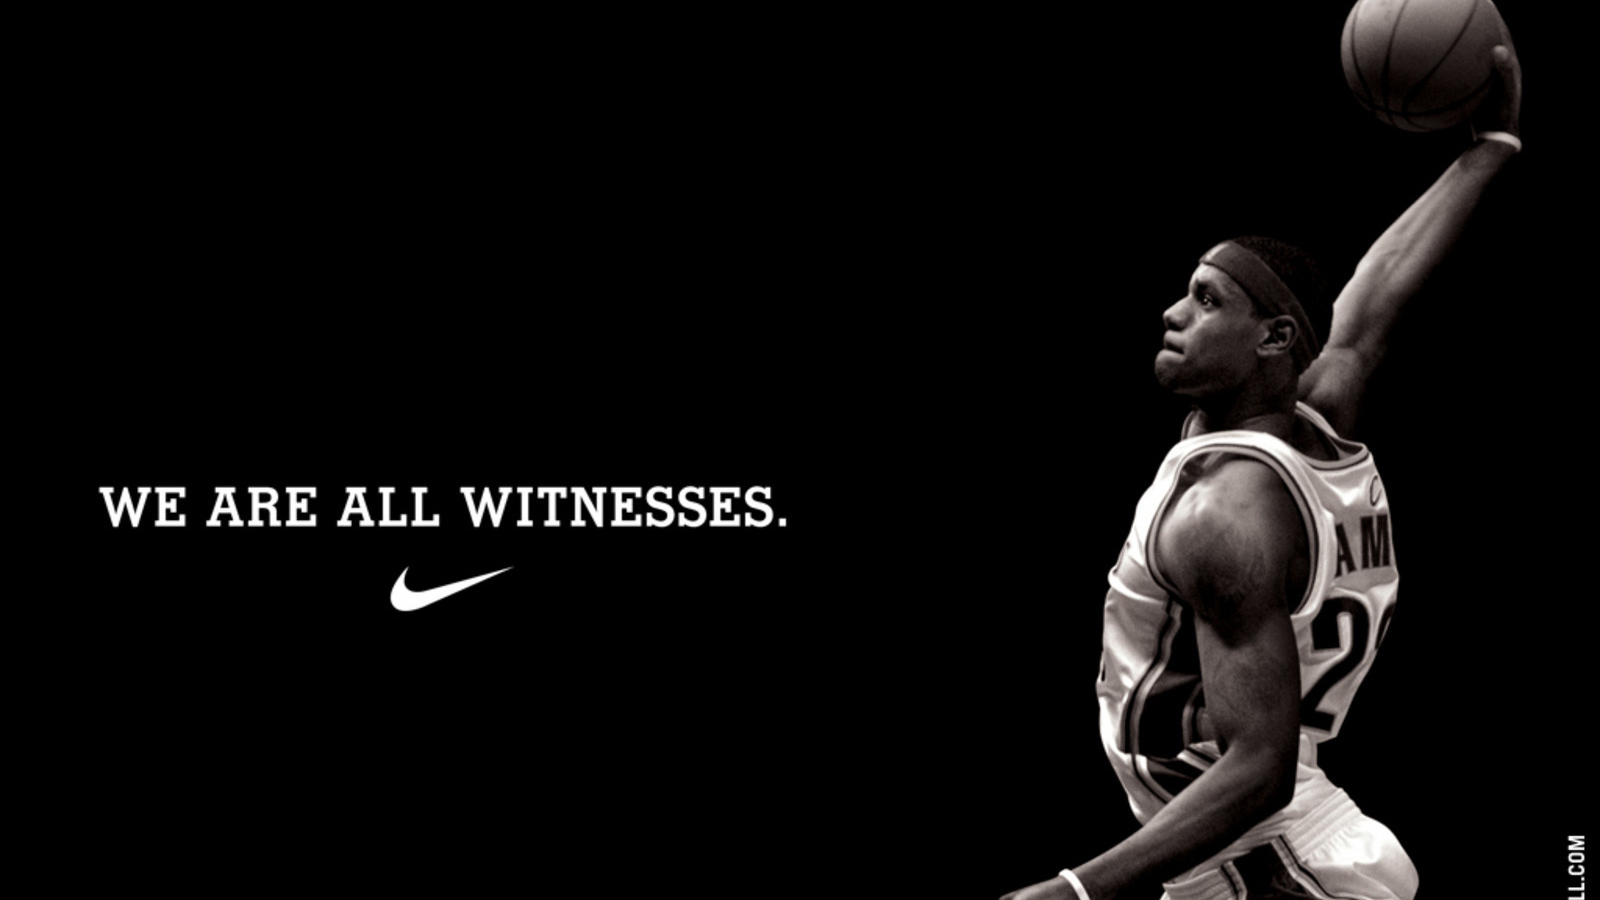 все мы свидетели. Nike